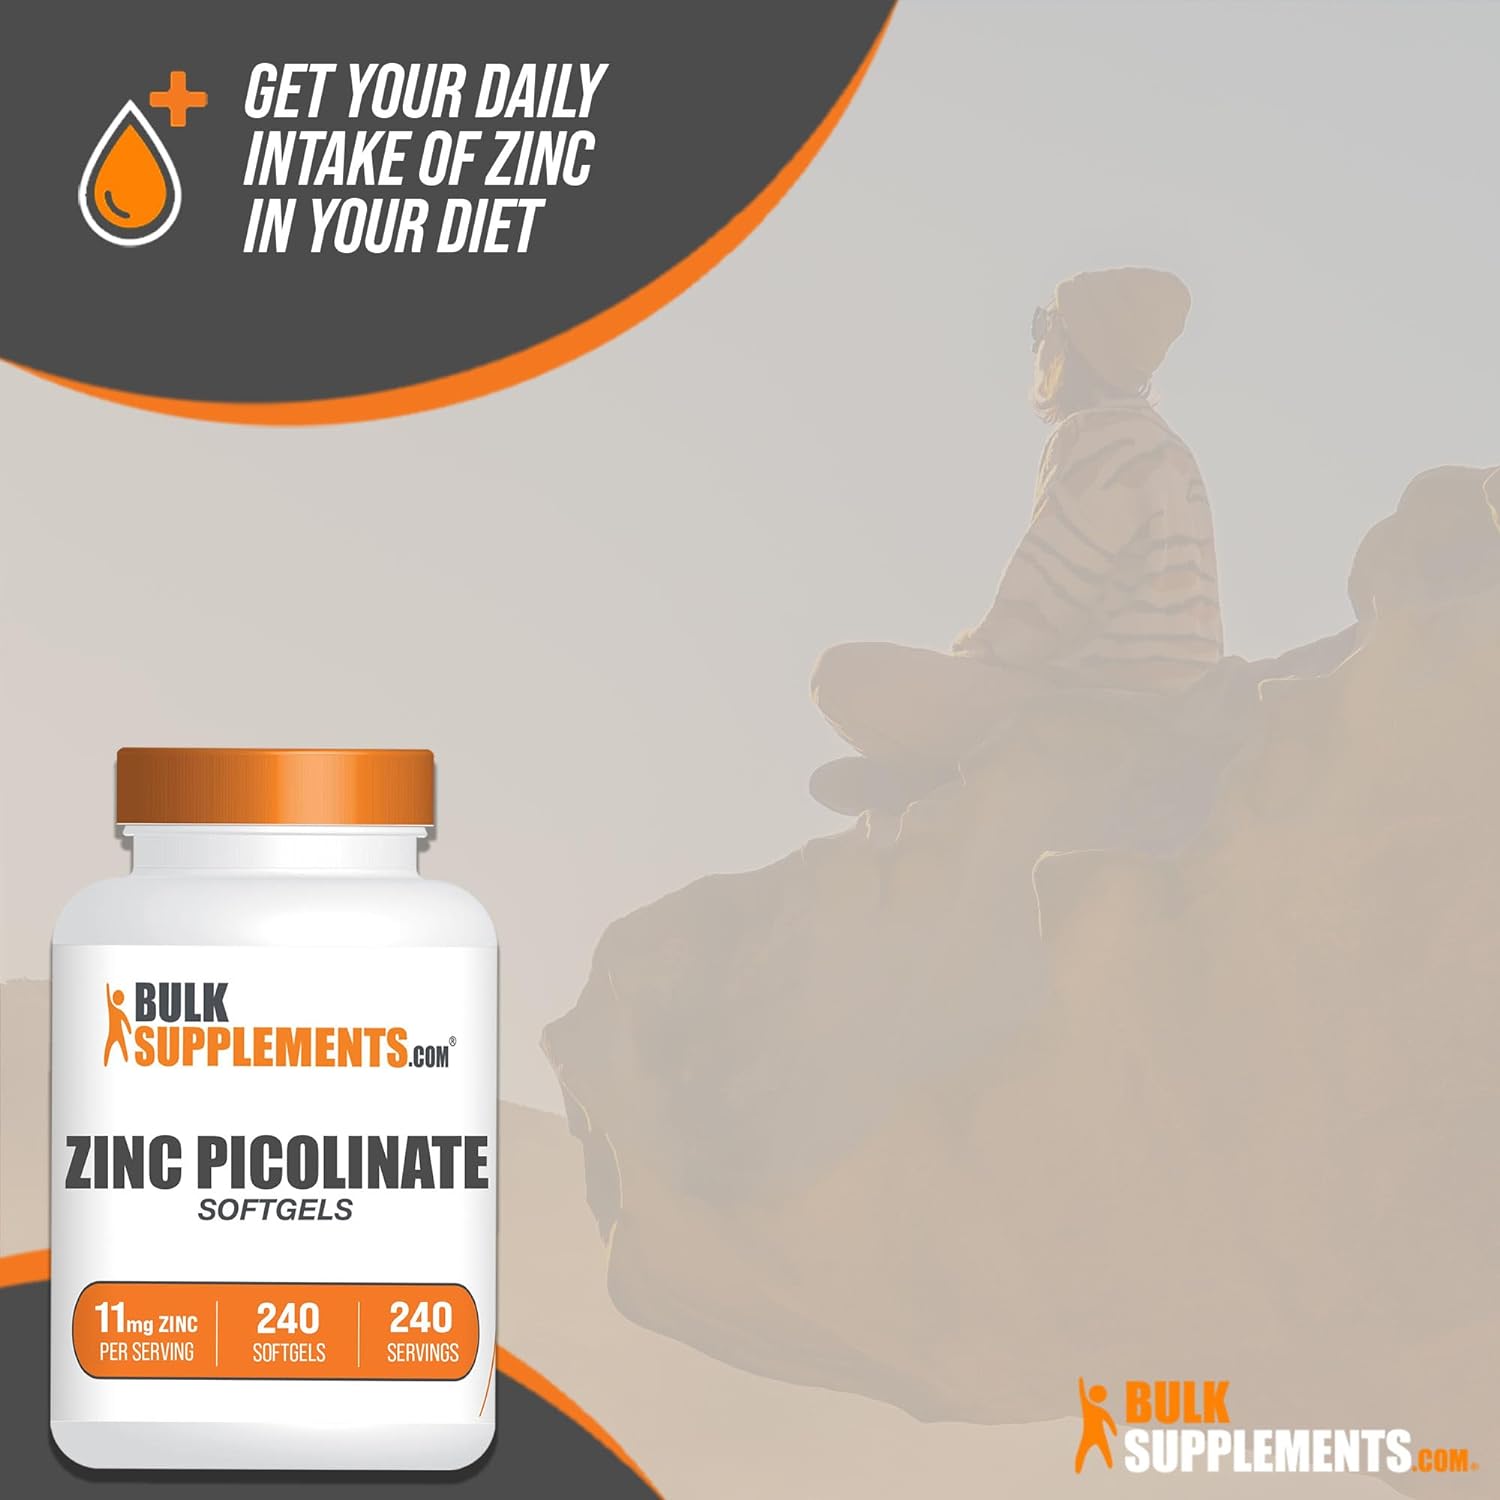 BulkSupplements.com Zinc Picolinate Softgels - Zinc Supplements, Zinc 